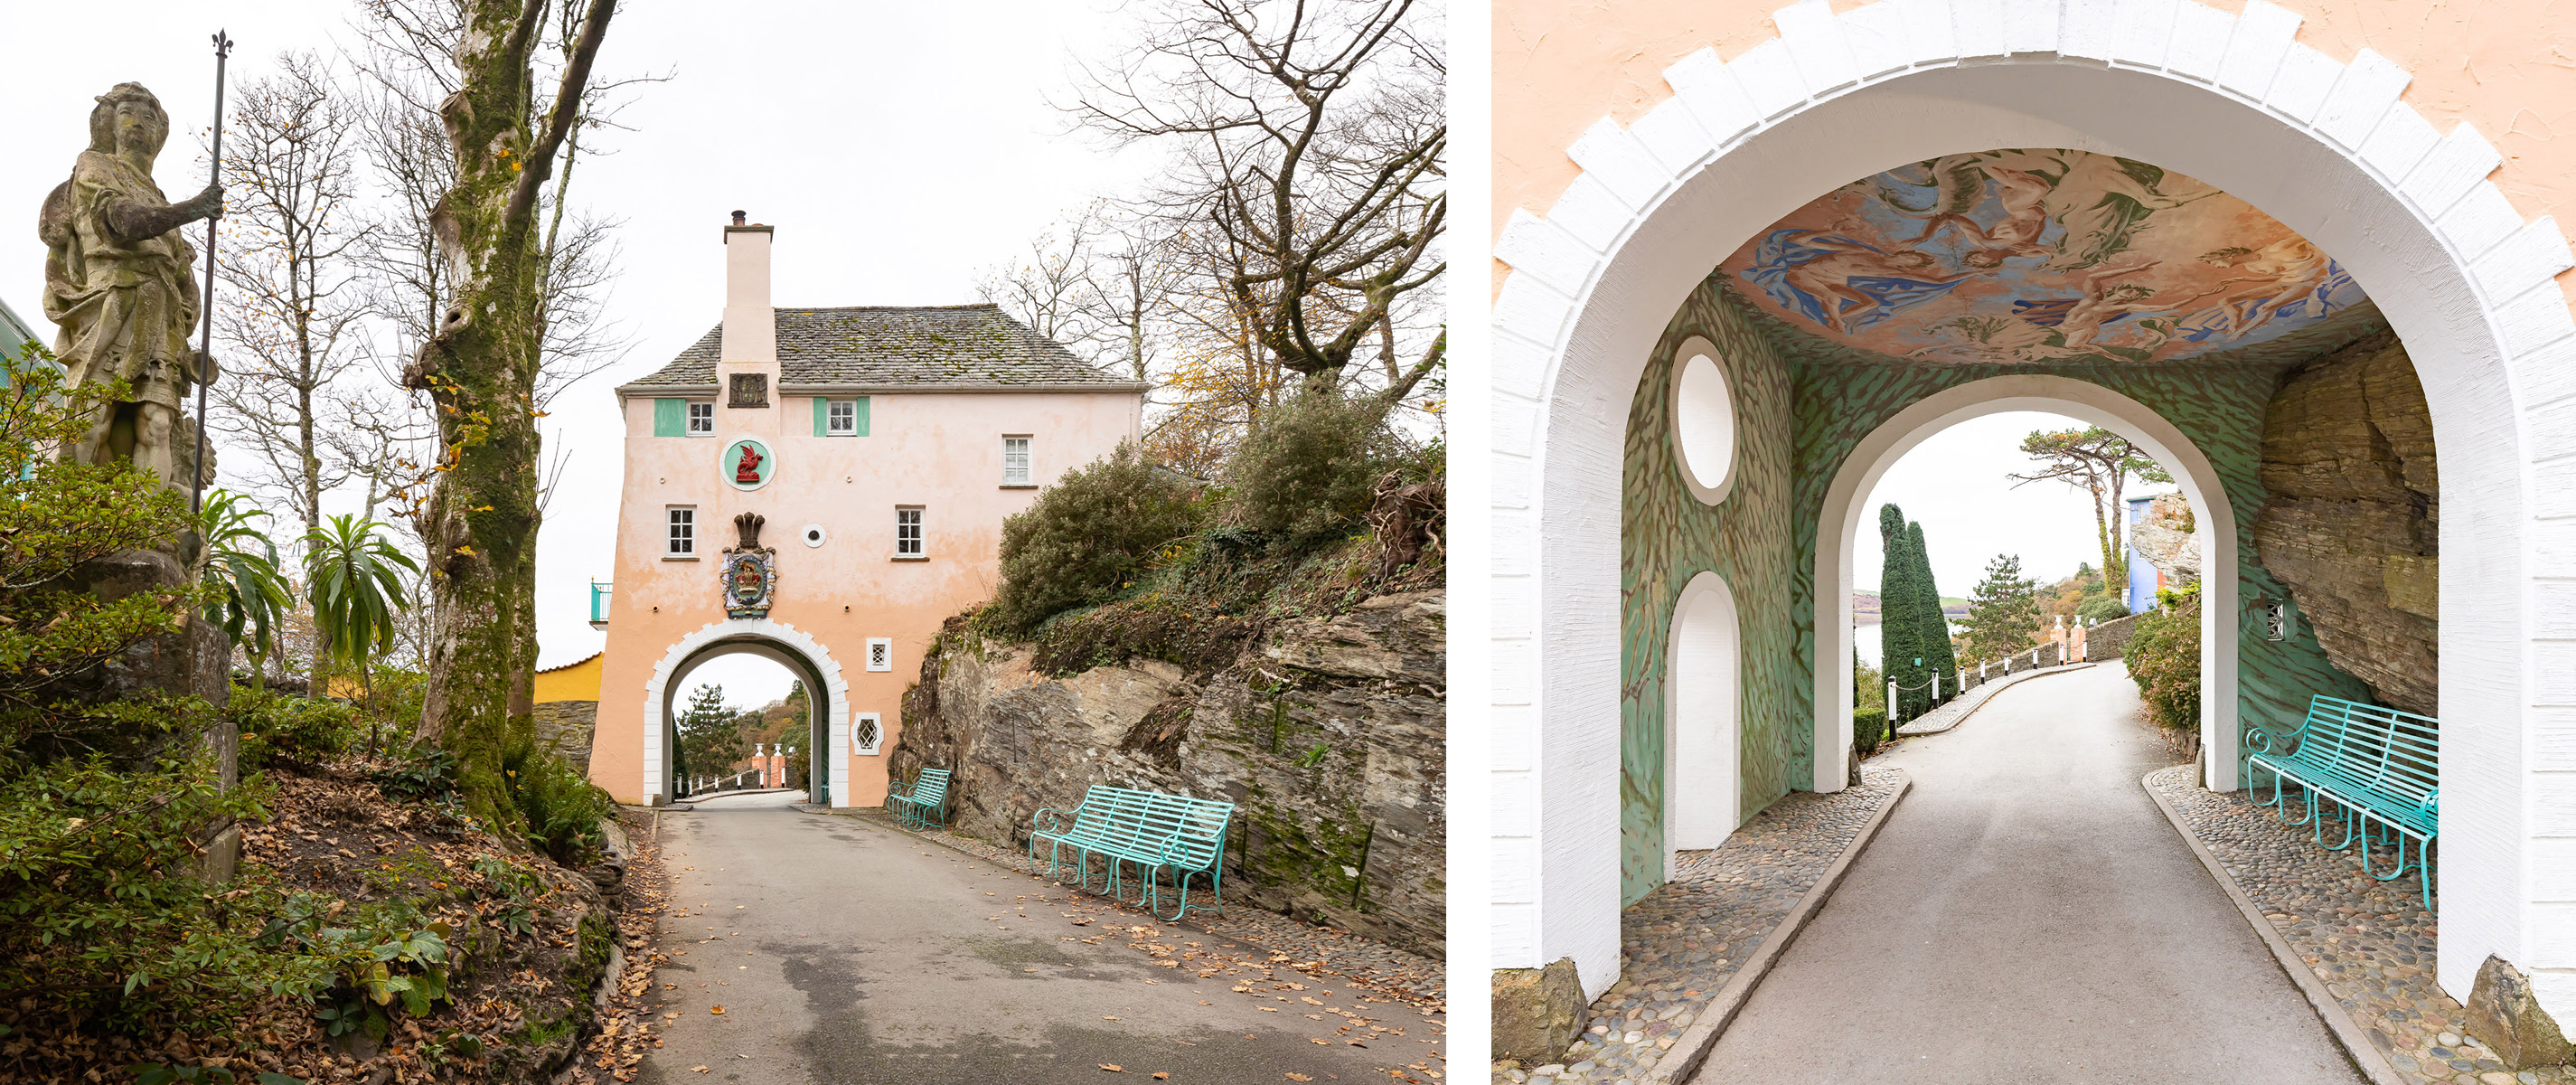 Two photos of the Portmeirion Gatehouse